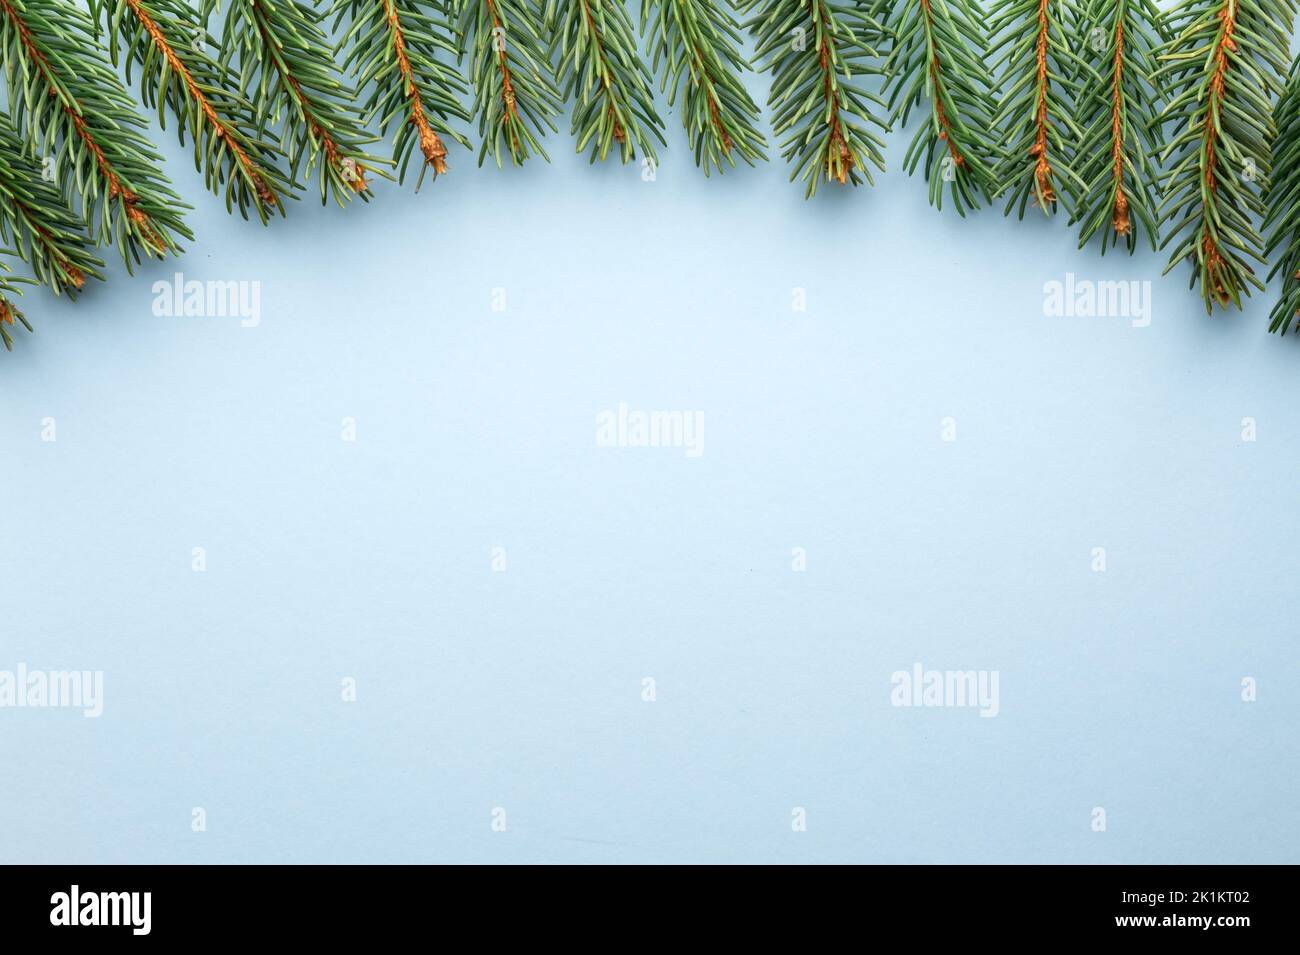 Arrière-plan créatif des fêtes de Noël avec brindilles de sapin sur fond de papier en carton bleu. Flat lay, vue de dessus, espace de copie Banque D'Images